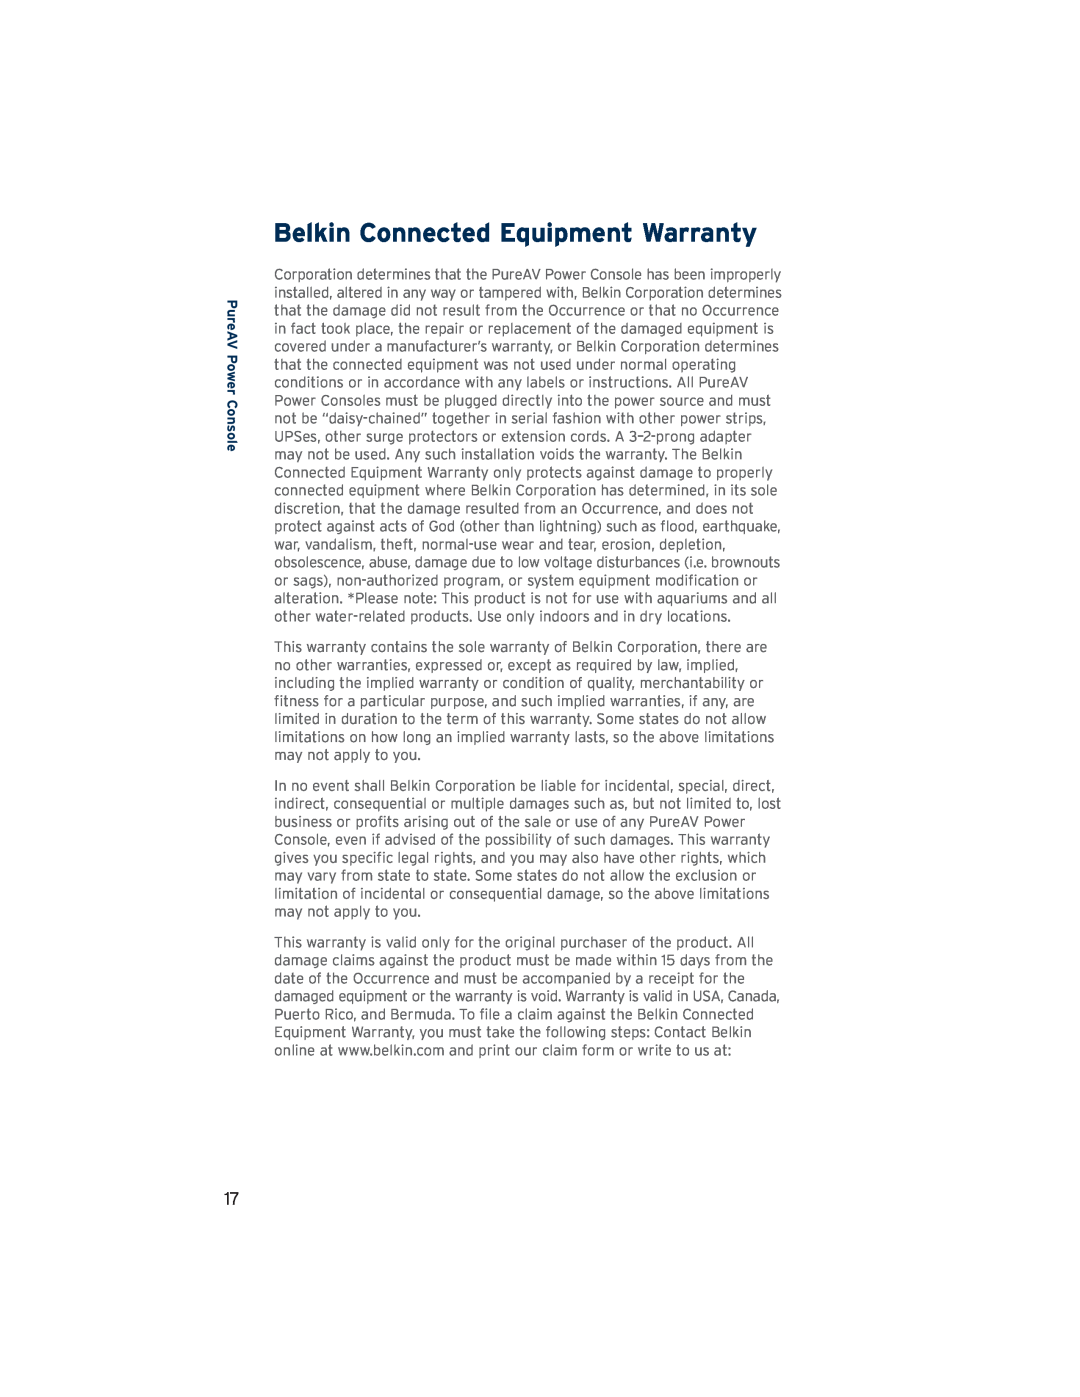 Belkin PF30 user manual Belkin Connected Equipment Warranty, PureAV Power Console 